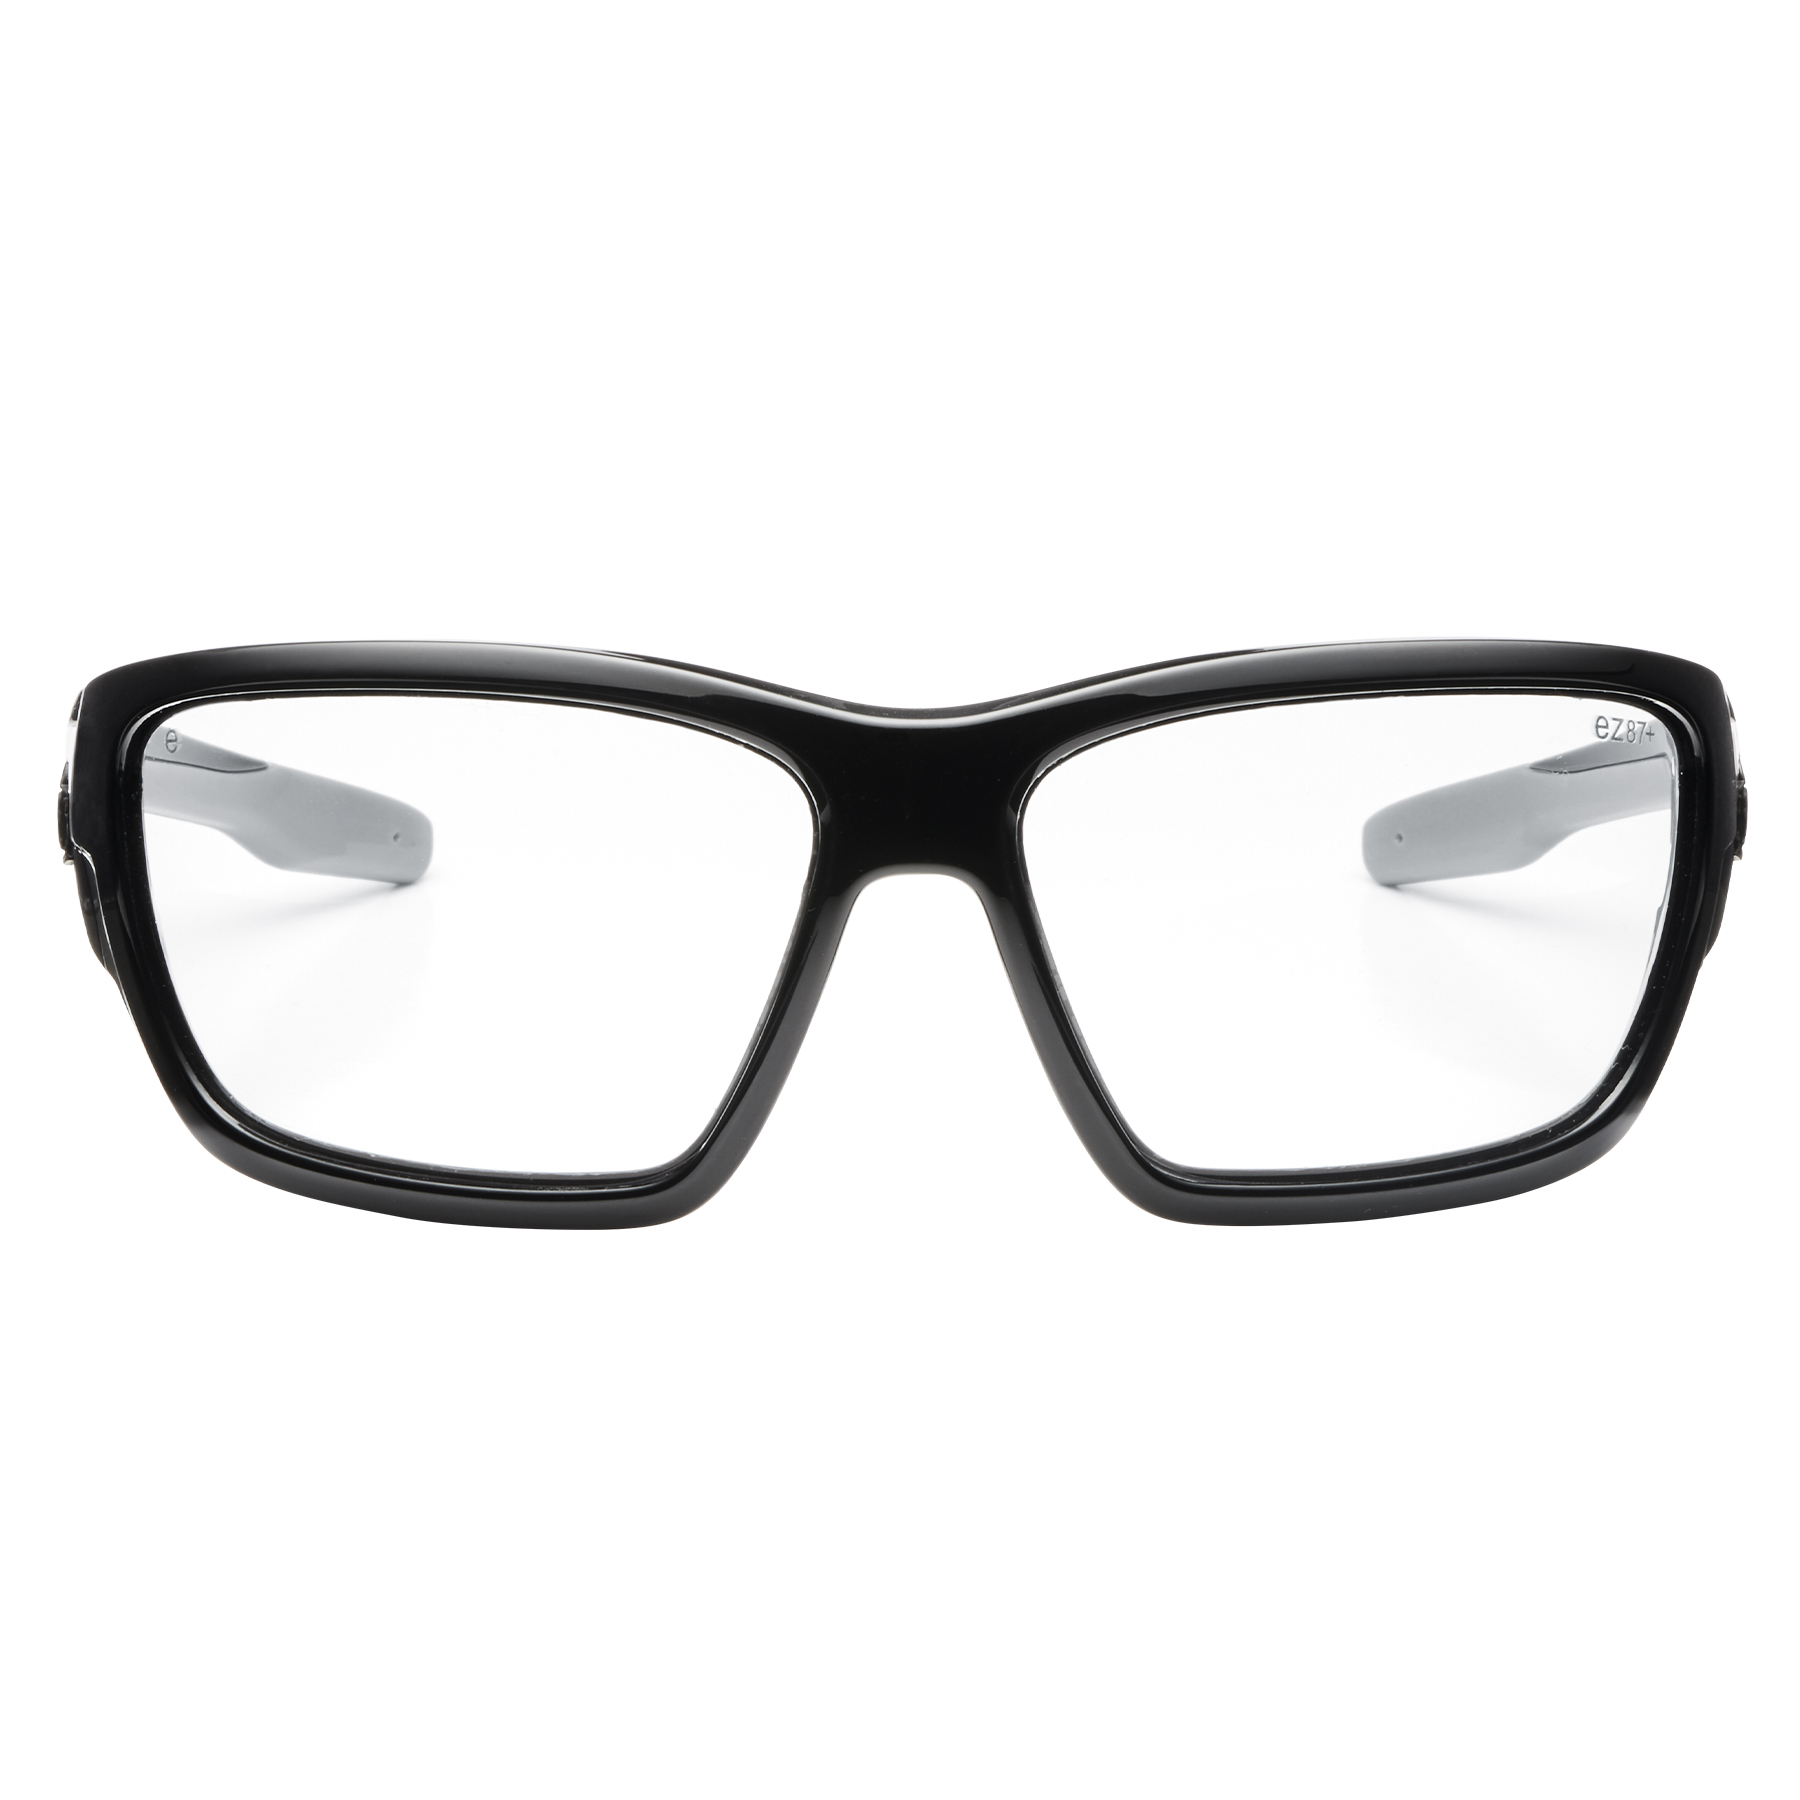 Baldr Full Frame Safety Glasses, Sunglasses